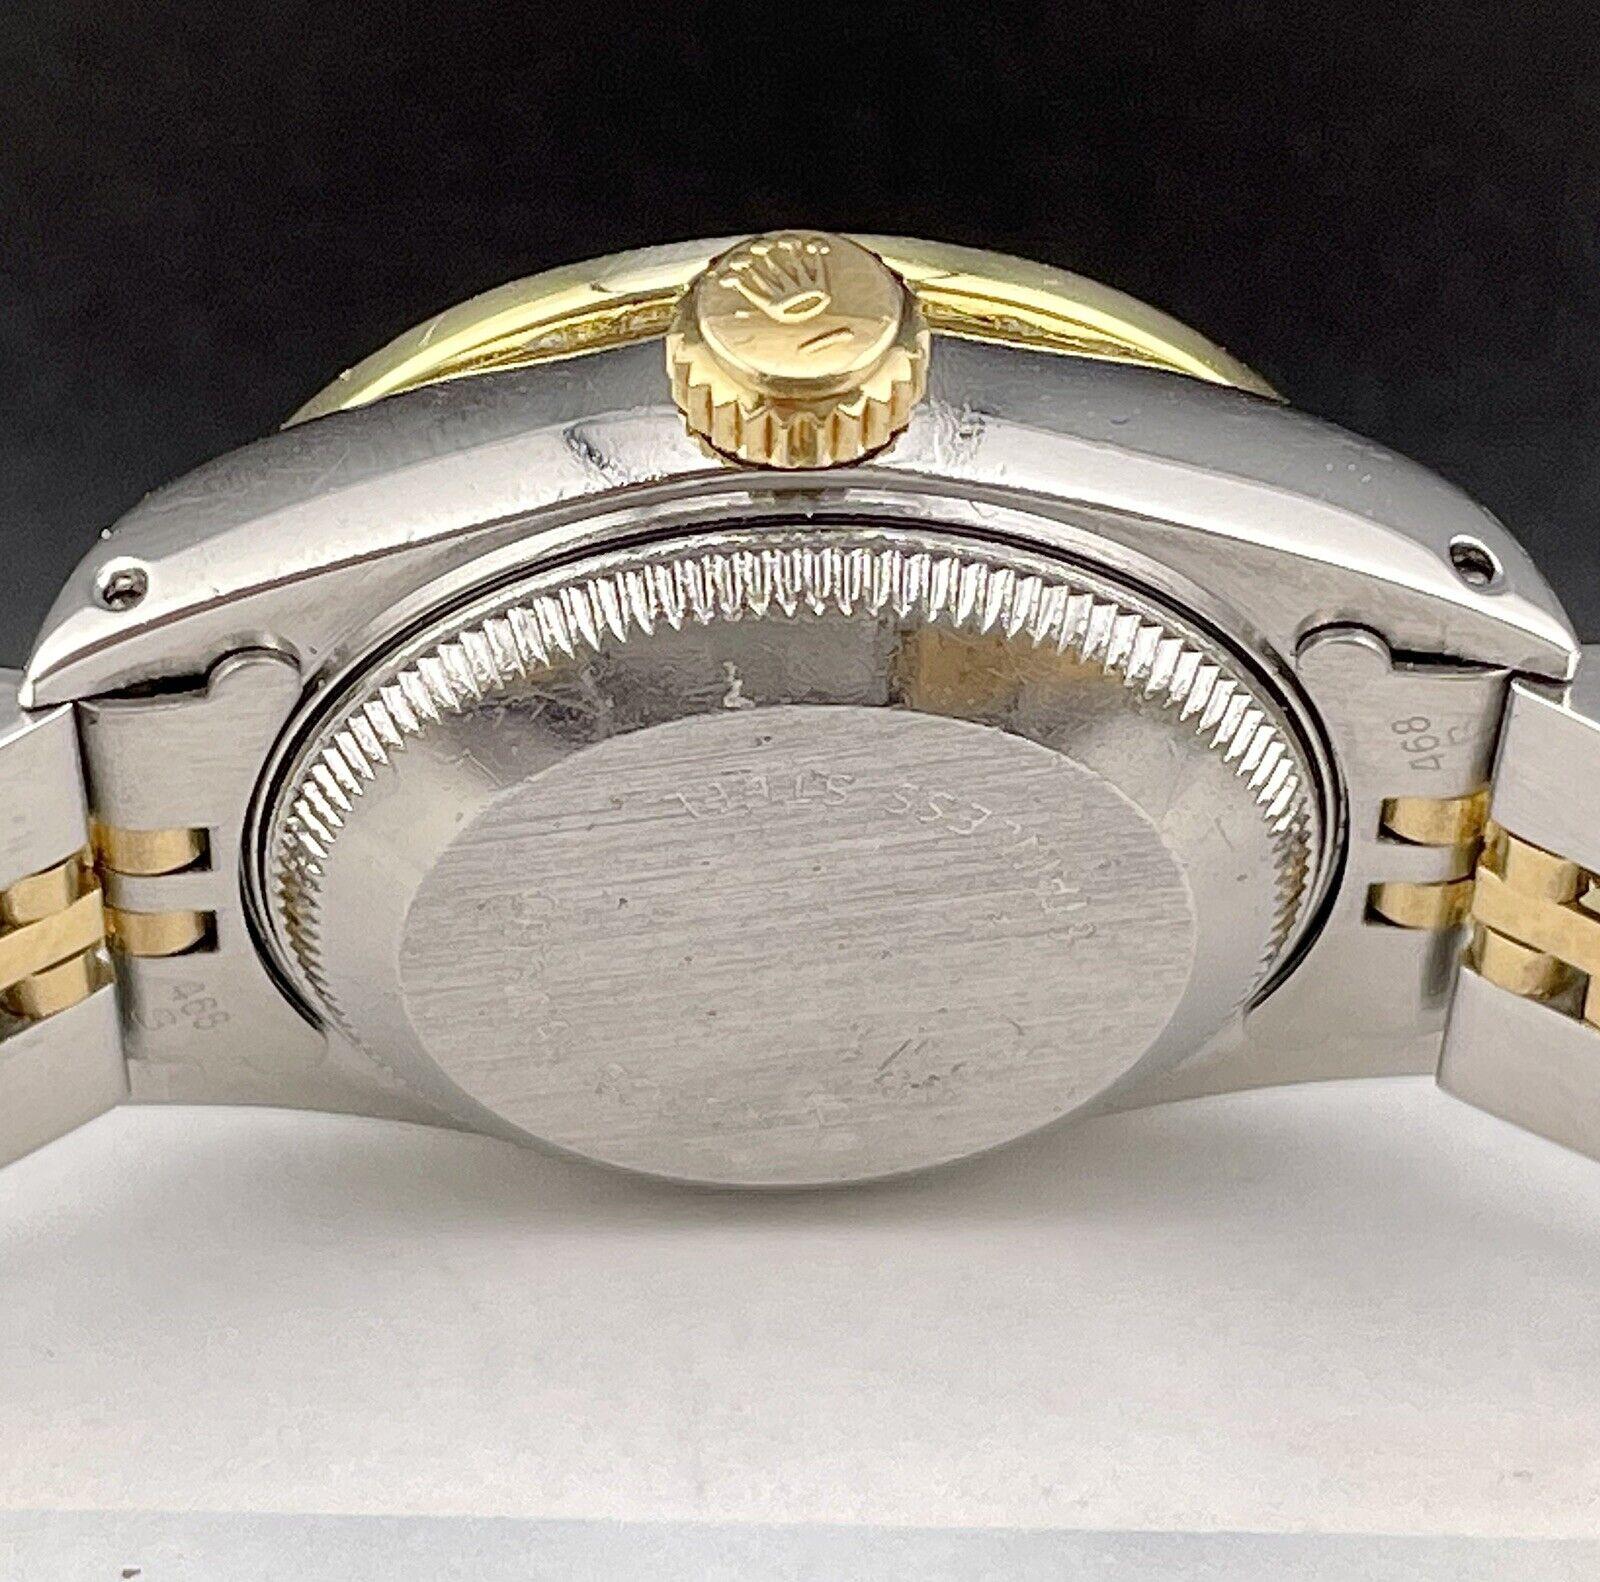 De las mujeres Rolex Ladies Datejust 26mm Reloj de Oro 18k y Acero ICED 1.5ct Diamantes Esfera Blanca en venta